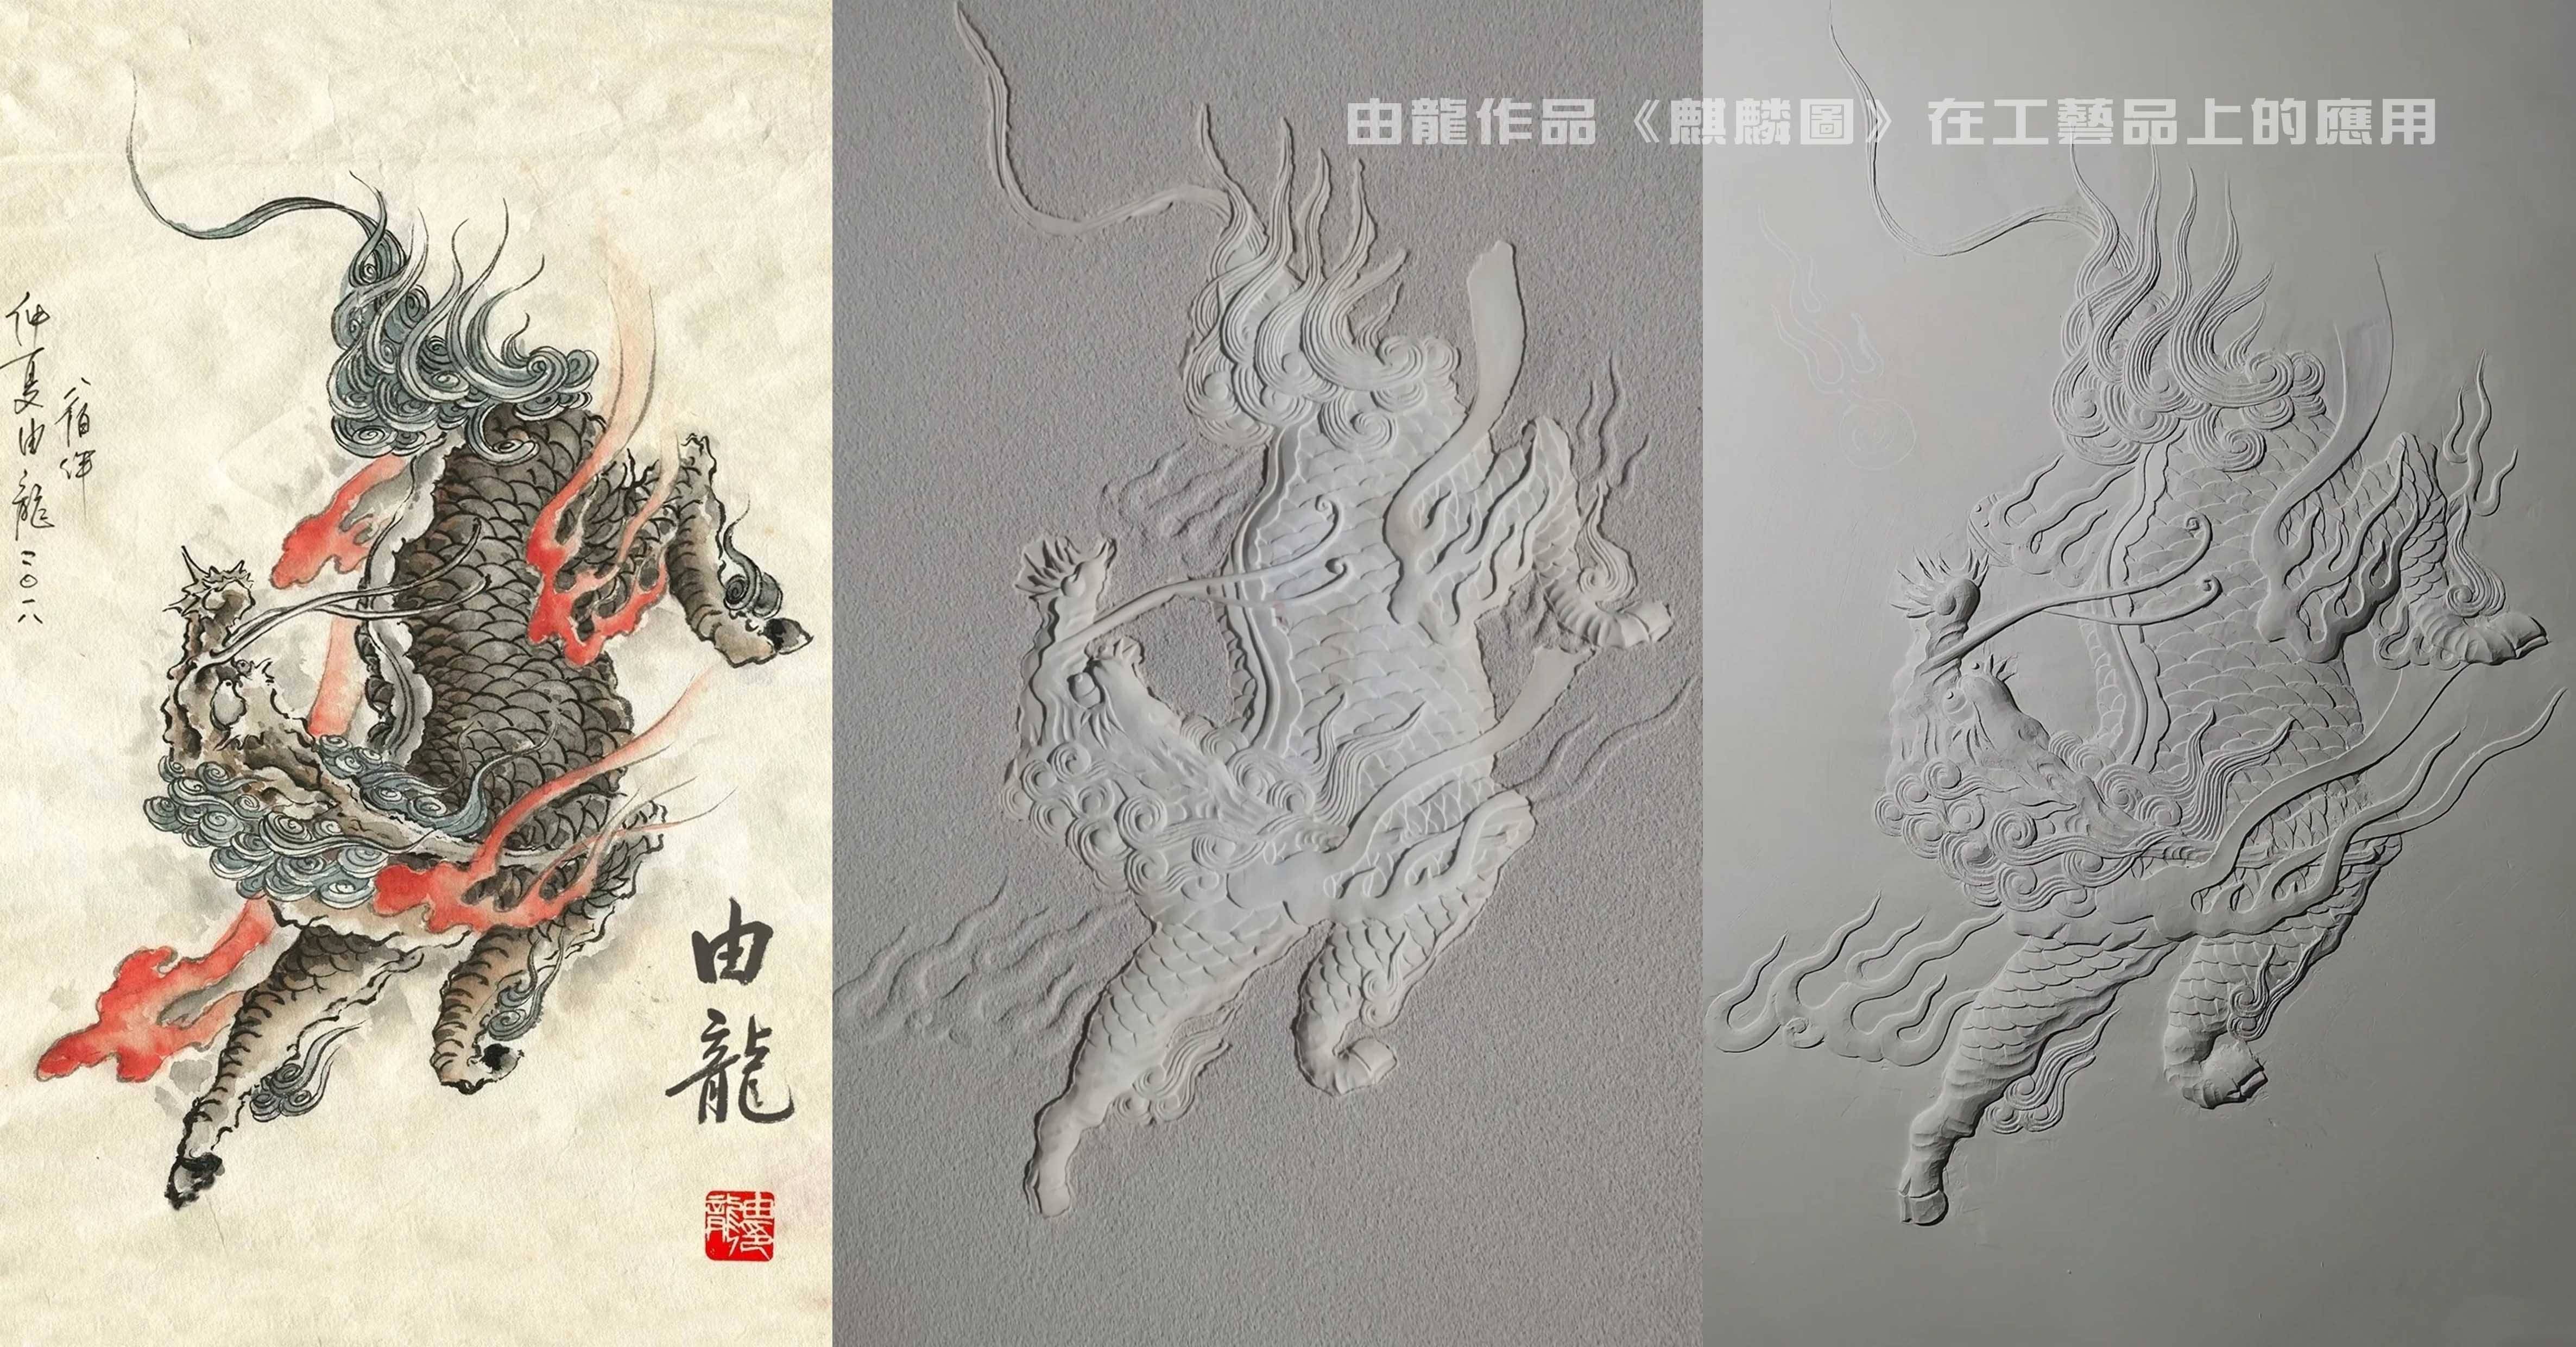 由龙：中华民族龙纹研究与工艺艺术品应用-电商科技网